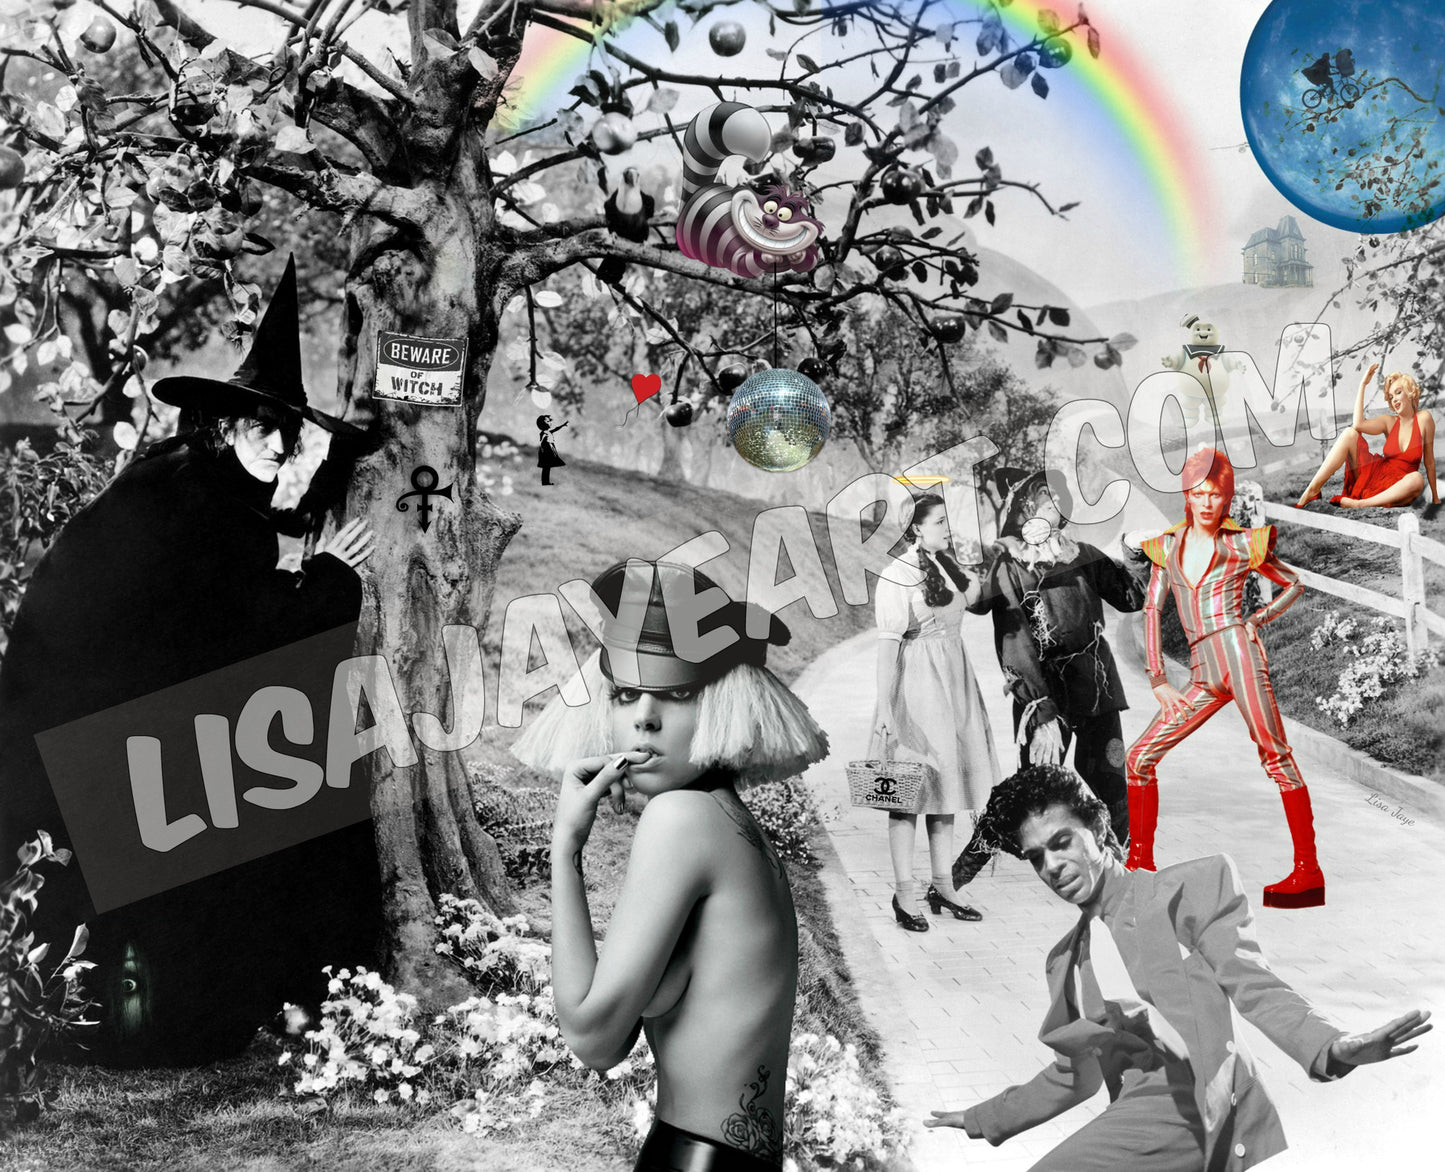 Pop Culture Wizard of Oz, Lady Gaga, Prince, David Bowie, Wall Art